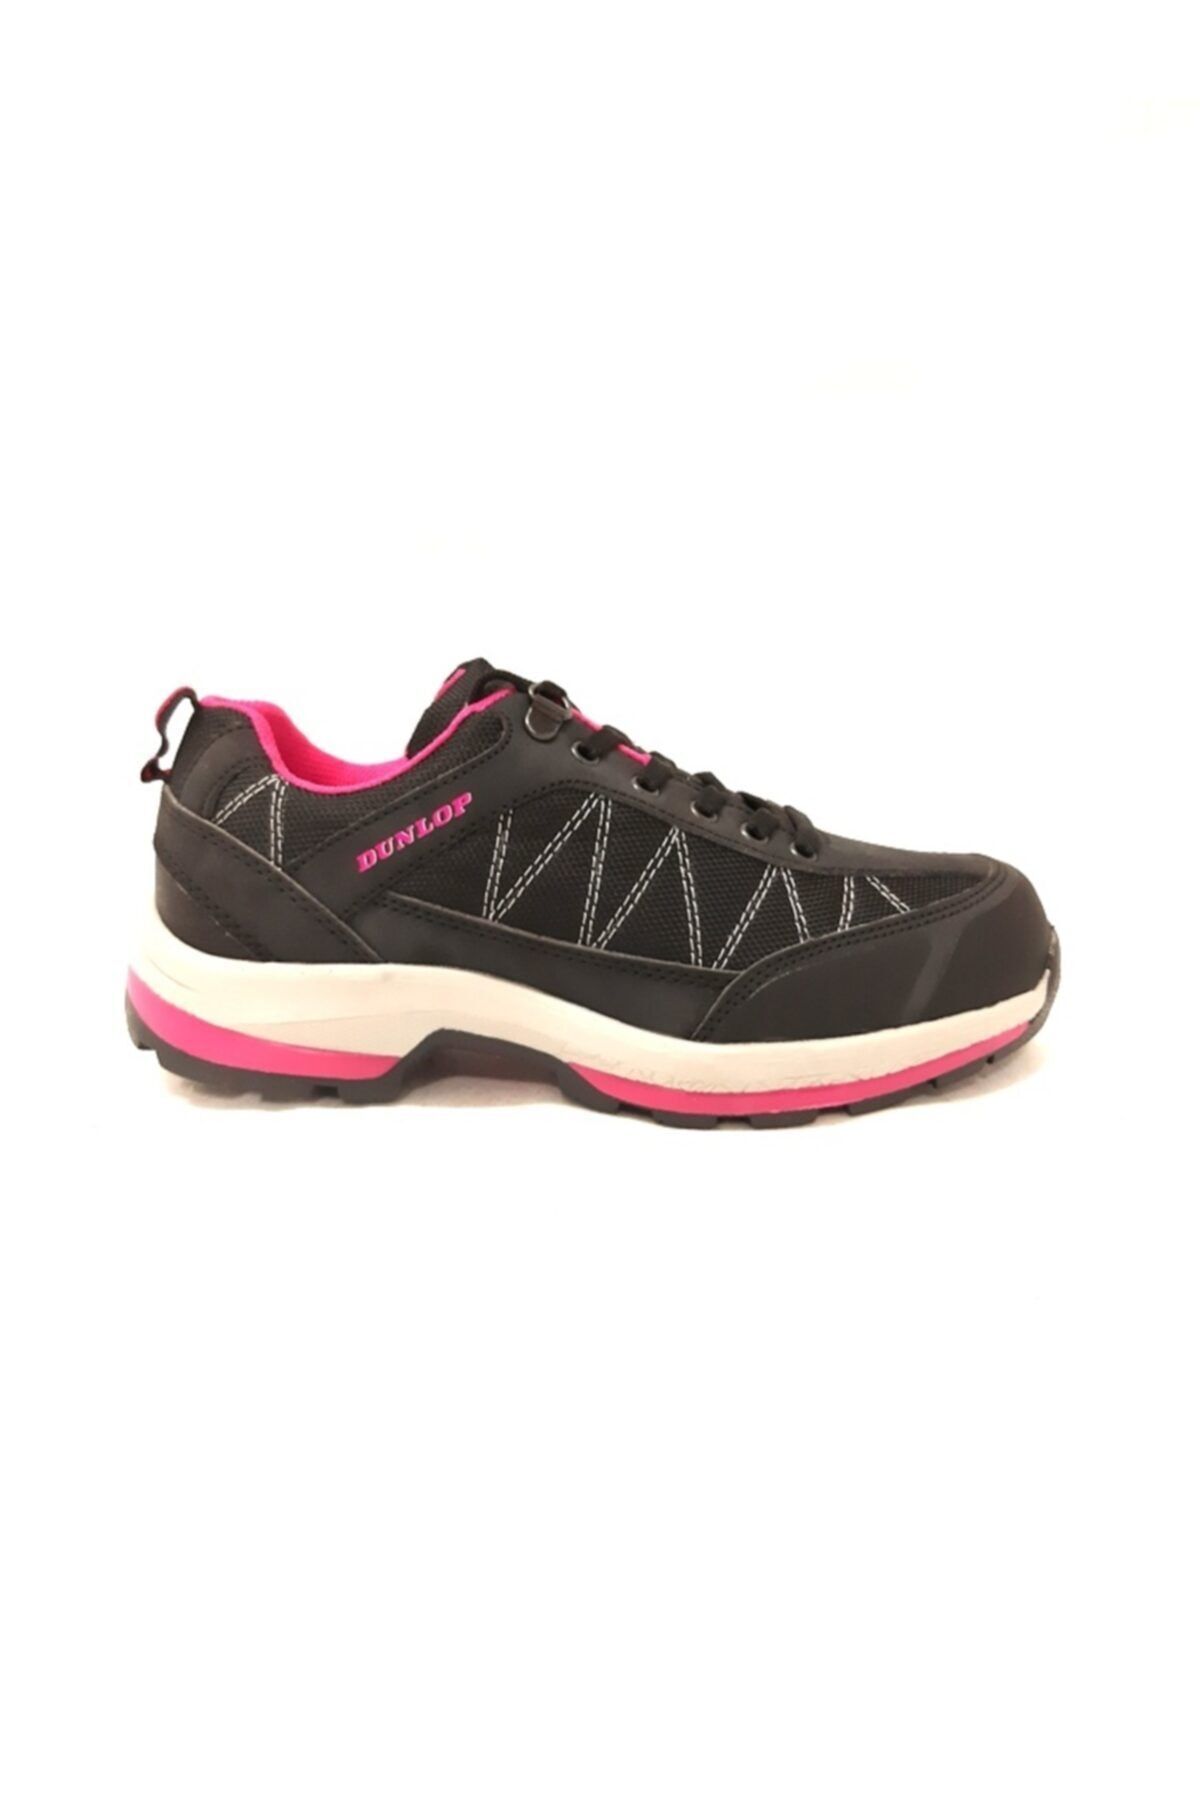 Dunlop Siyah Outdoor Kadın Spor Ayakkabı